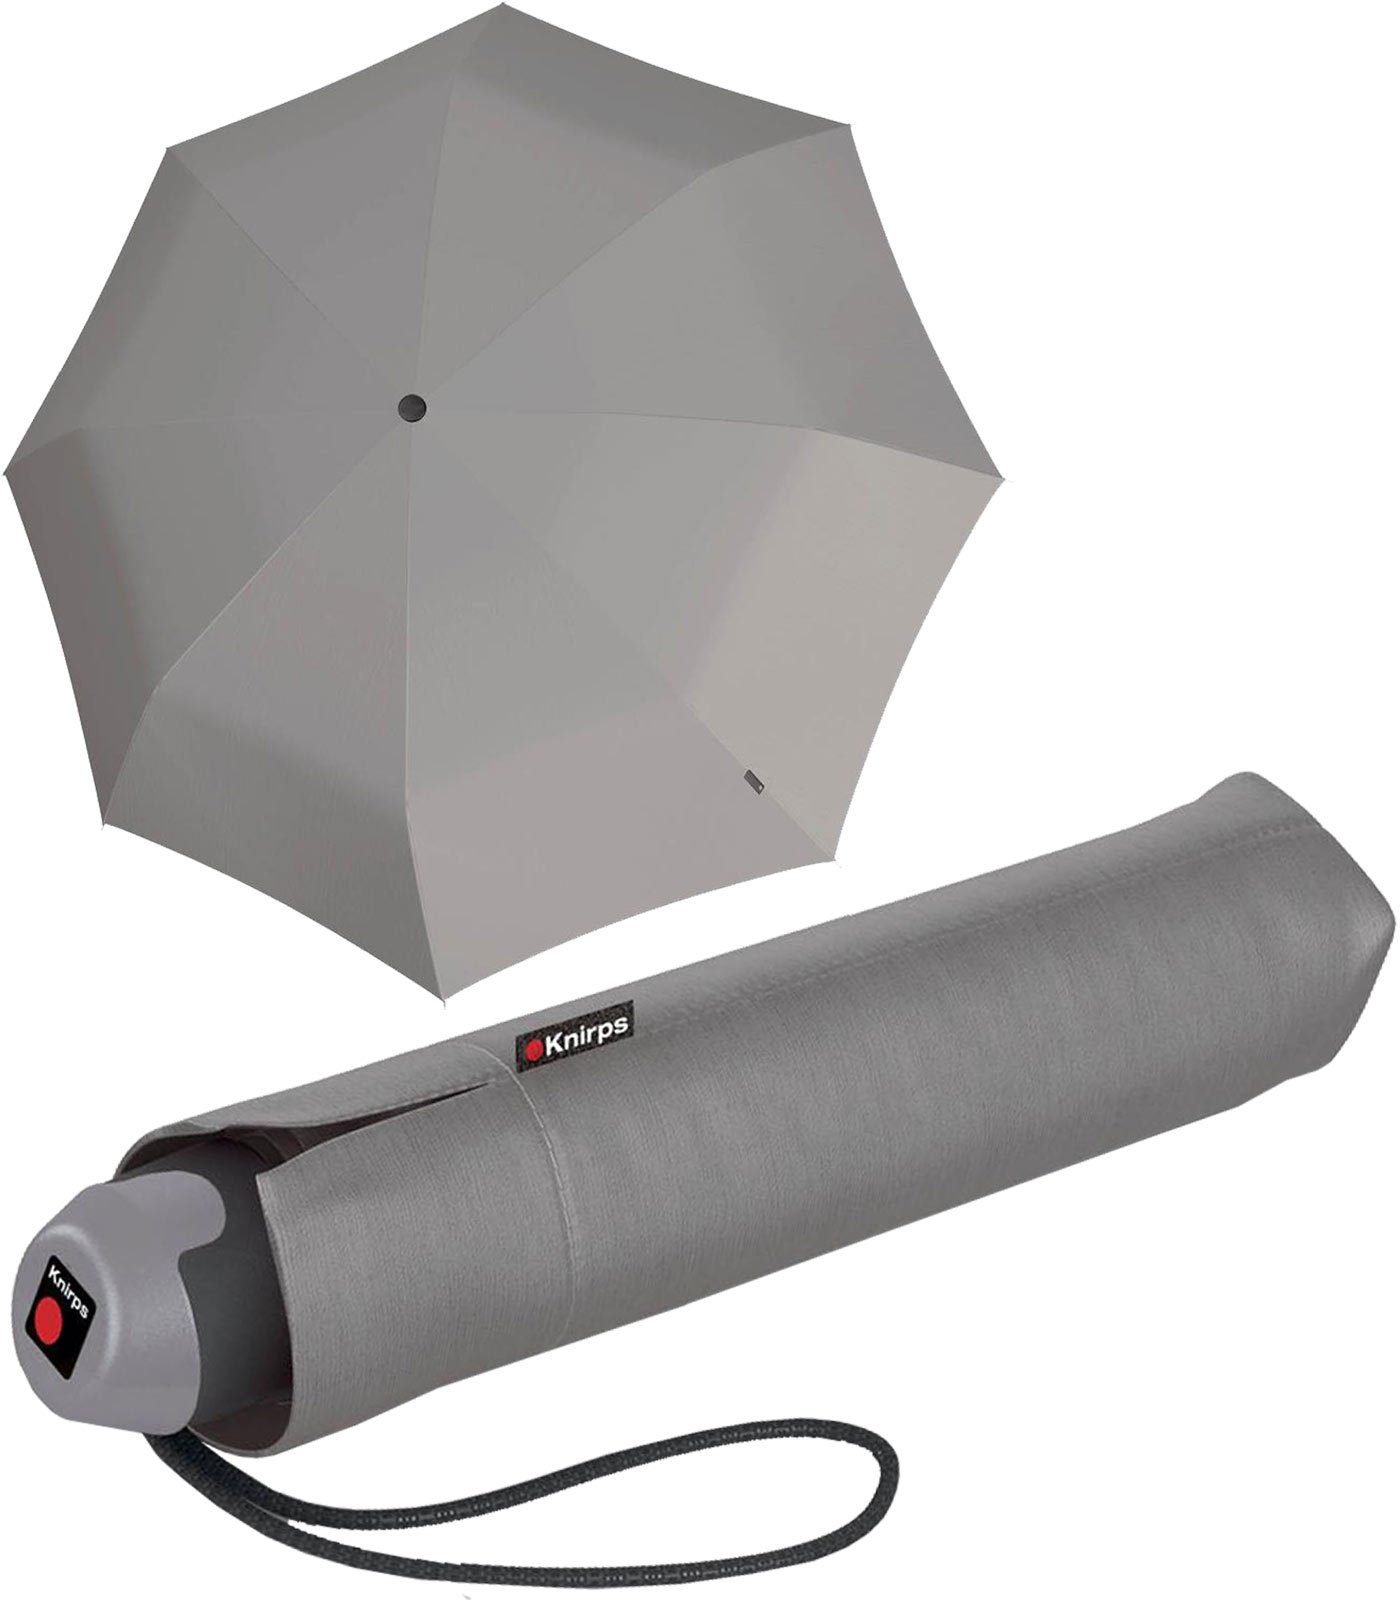 Knirps® Taschenregenschirm E.051 grey, leichter Regenschirm mit Handöffner, der kleine Taschenschirm für den Alltag grau